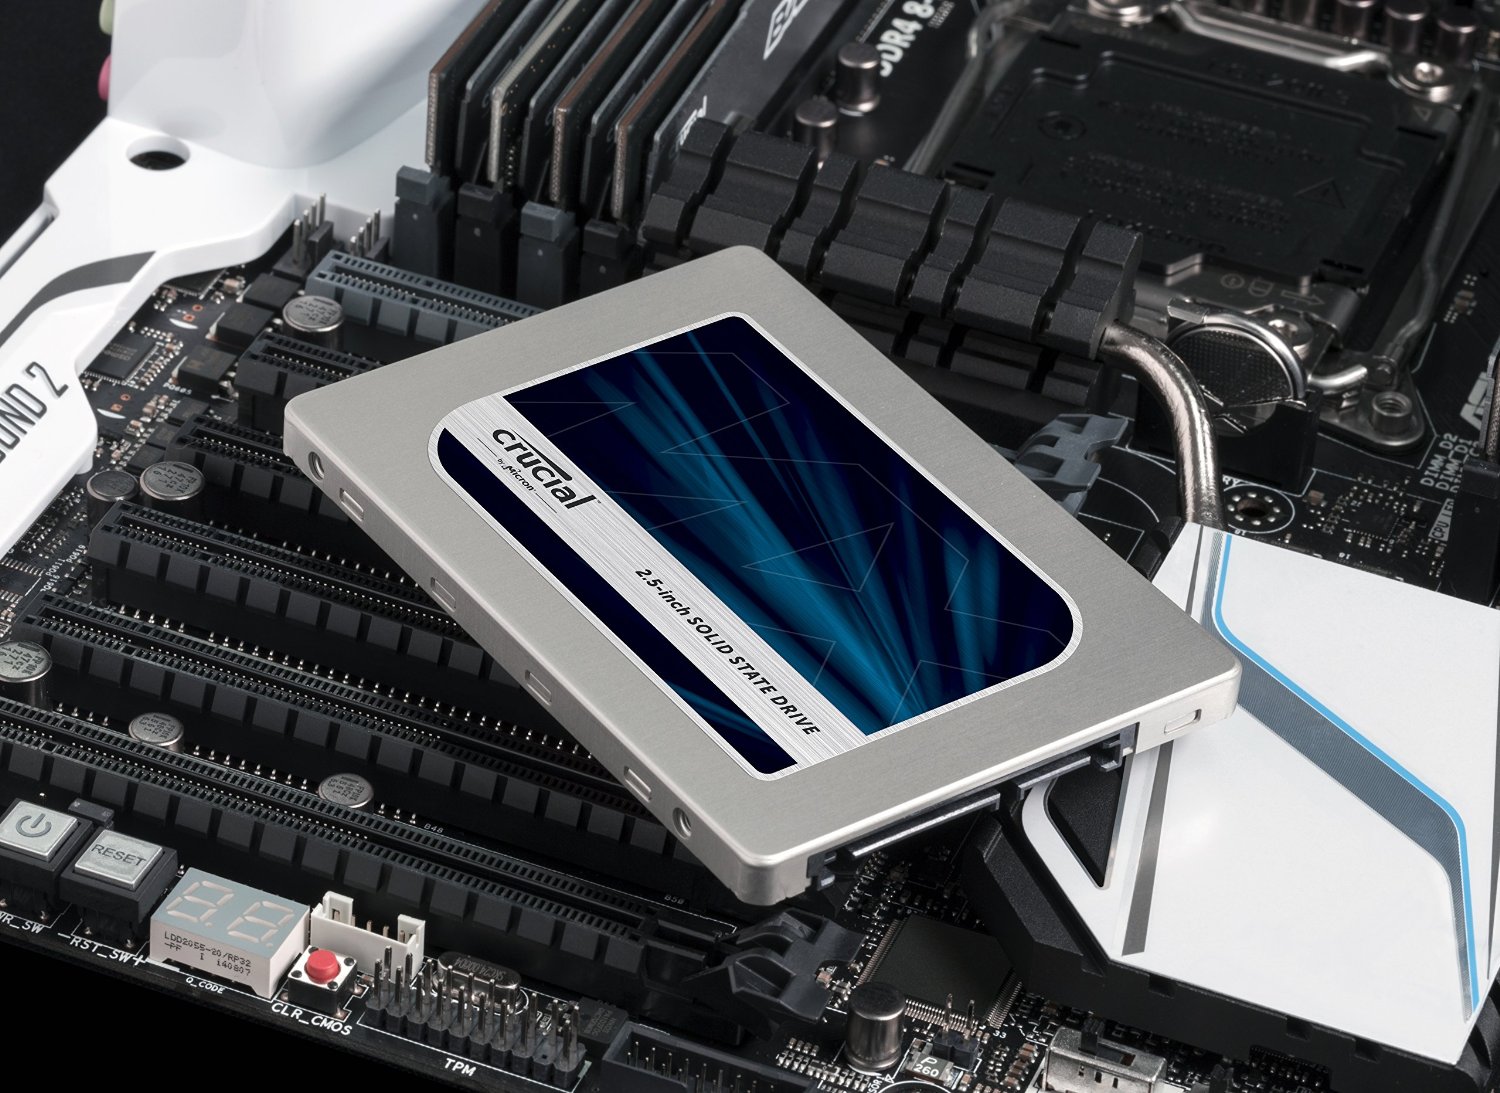 12月20日限定 『ダンボーモバイルバッテリー』 『サムソン250GB SSD』がお得な価格に!amazonタイムセール中